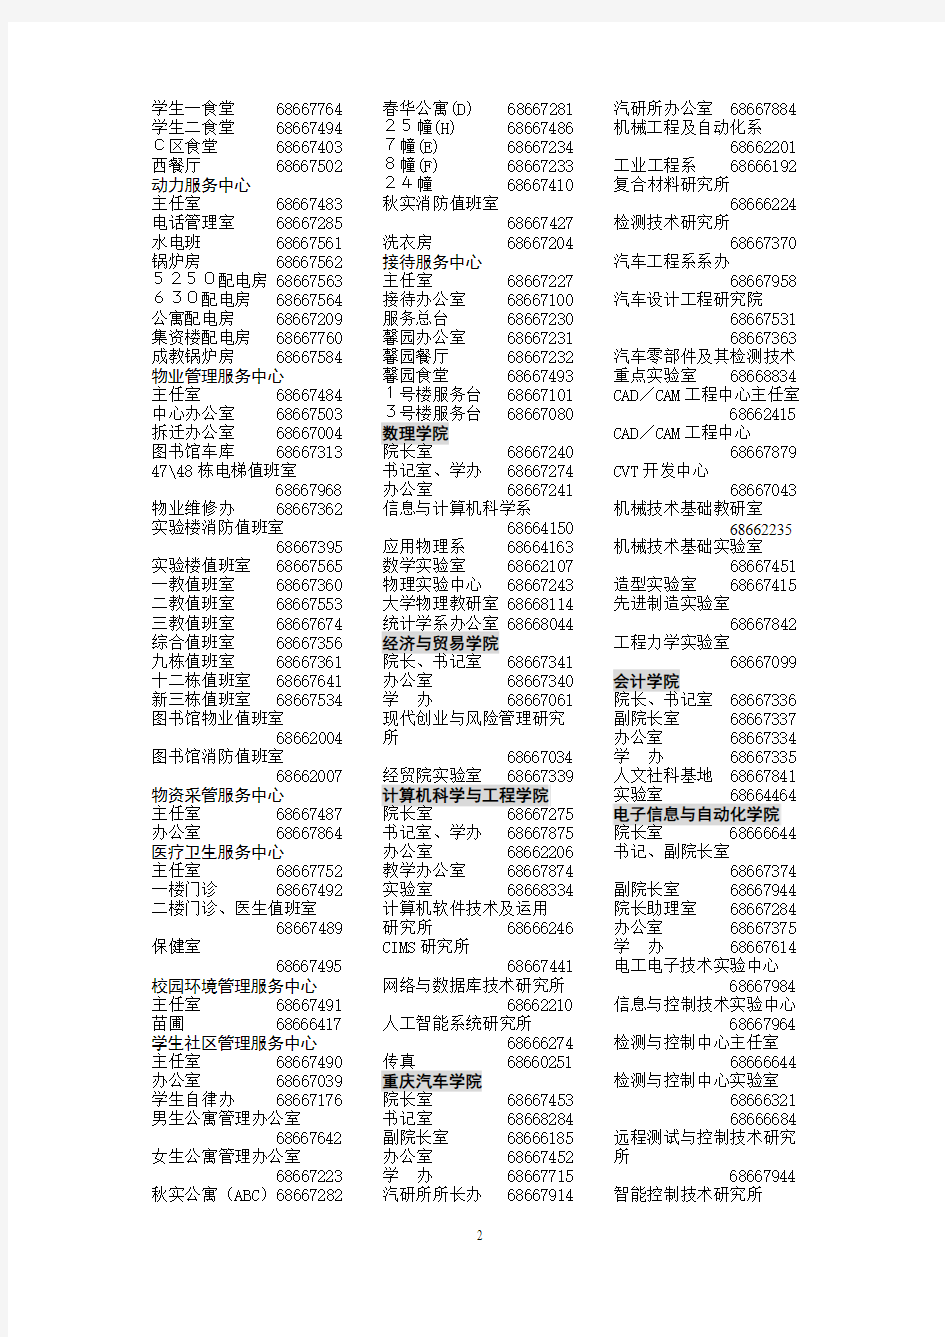 重庆工学院杨家坪校区电话号码表